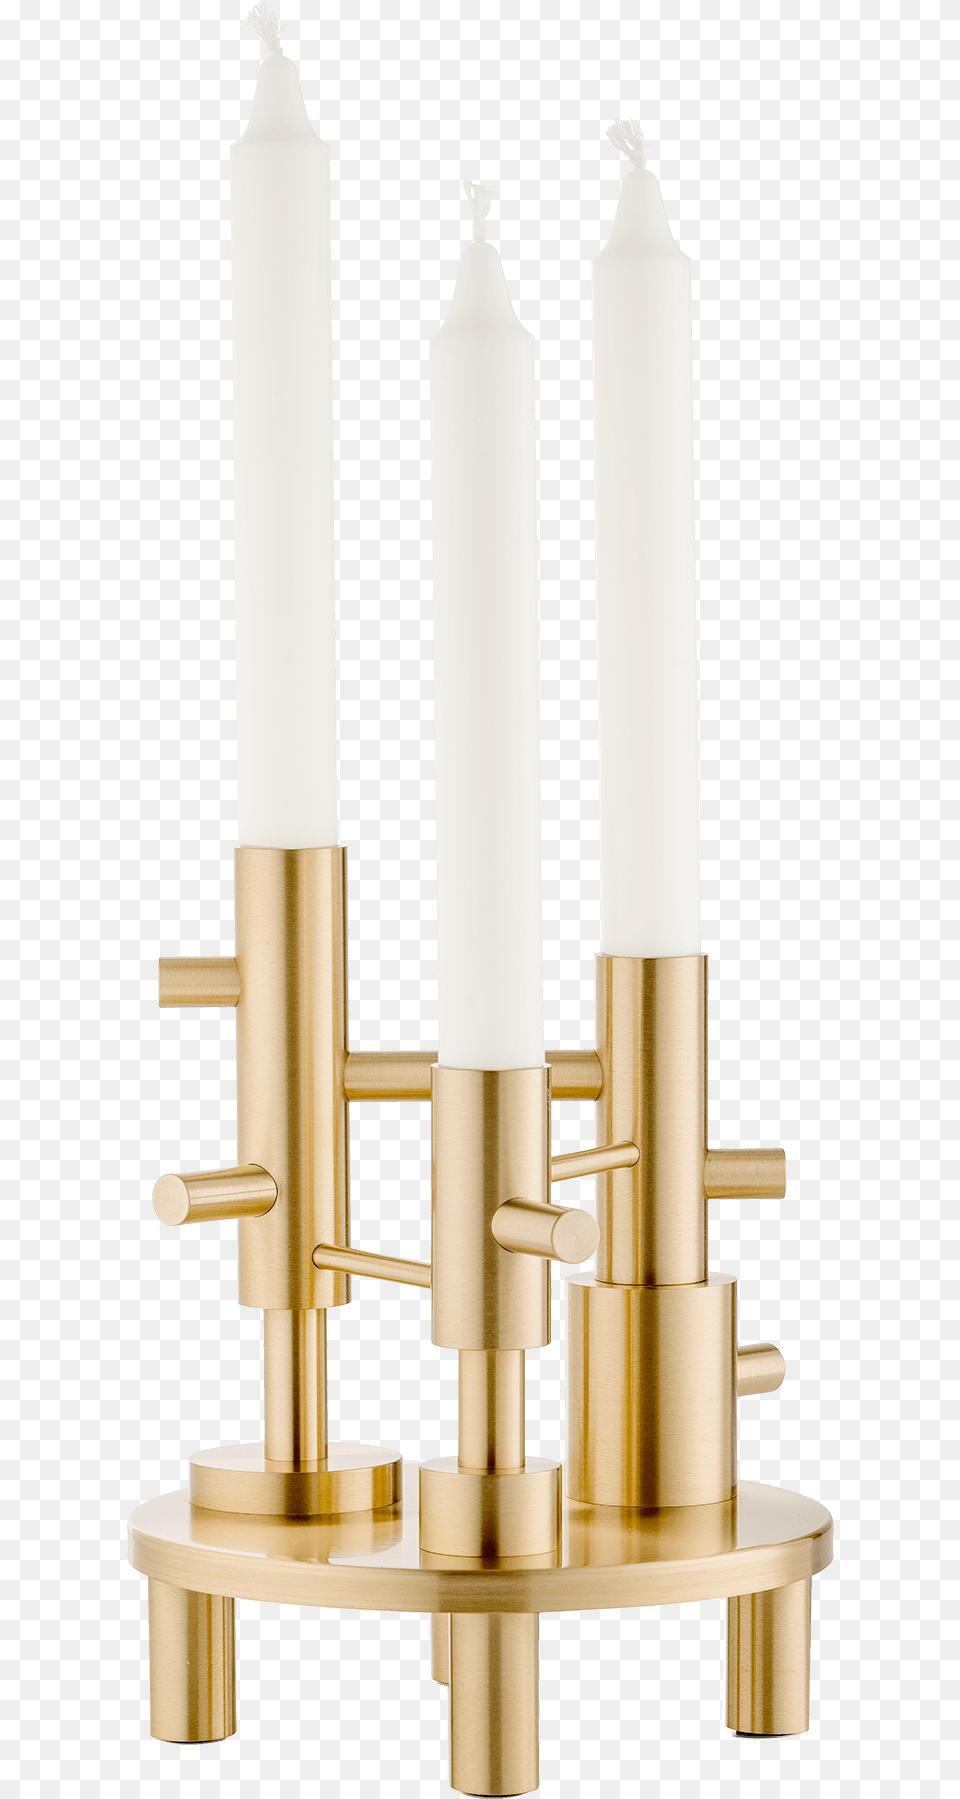 Candleholder H 20 Cm Large Solid Brass Fritz Hansen Candleholder Large Solid Brass By Jaime, Candle, Chandelier, Lamp Free Transparent Png